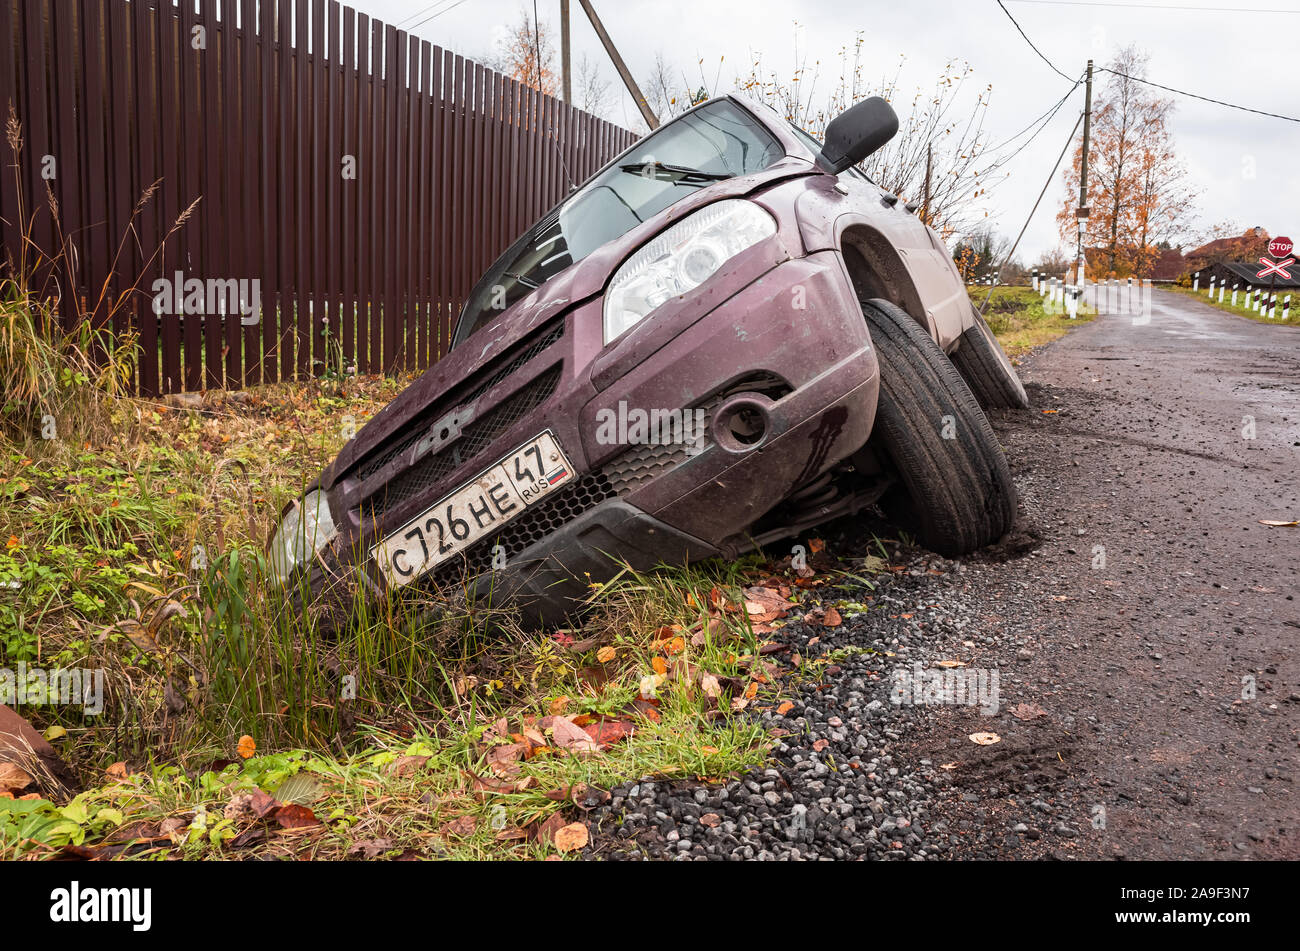 San Pietroburgo, Russia - 19 Ottobre 2019: Chevrolet Niva auto in un incidente si trova in un fosso da strada rurale di giorno, vista frontale Foto Stock